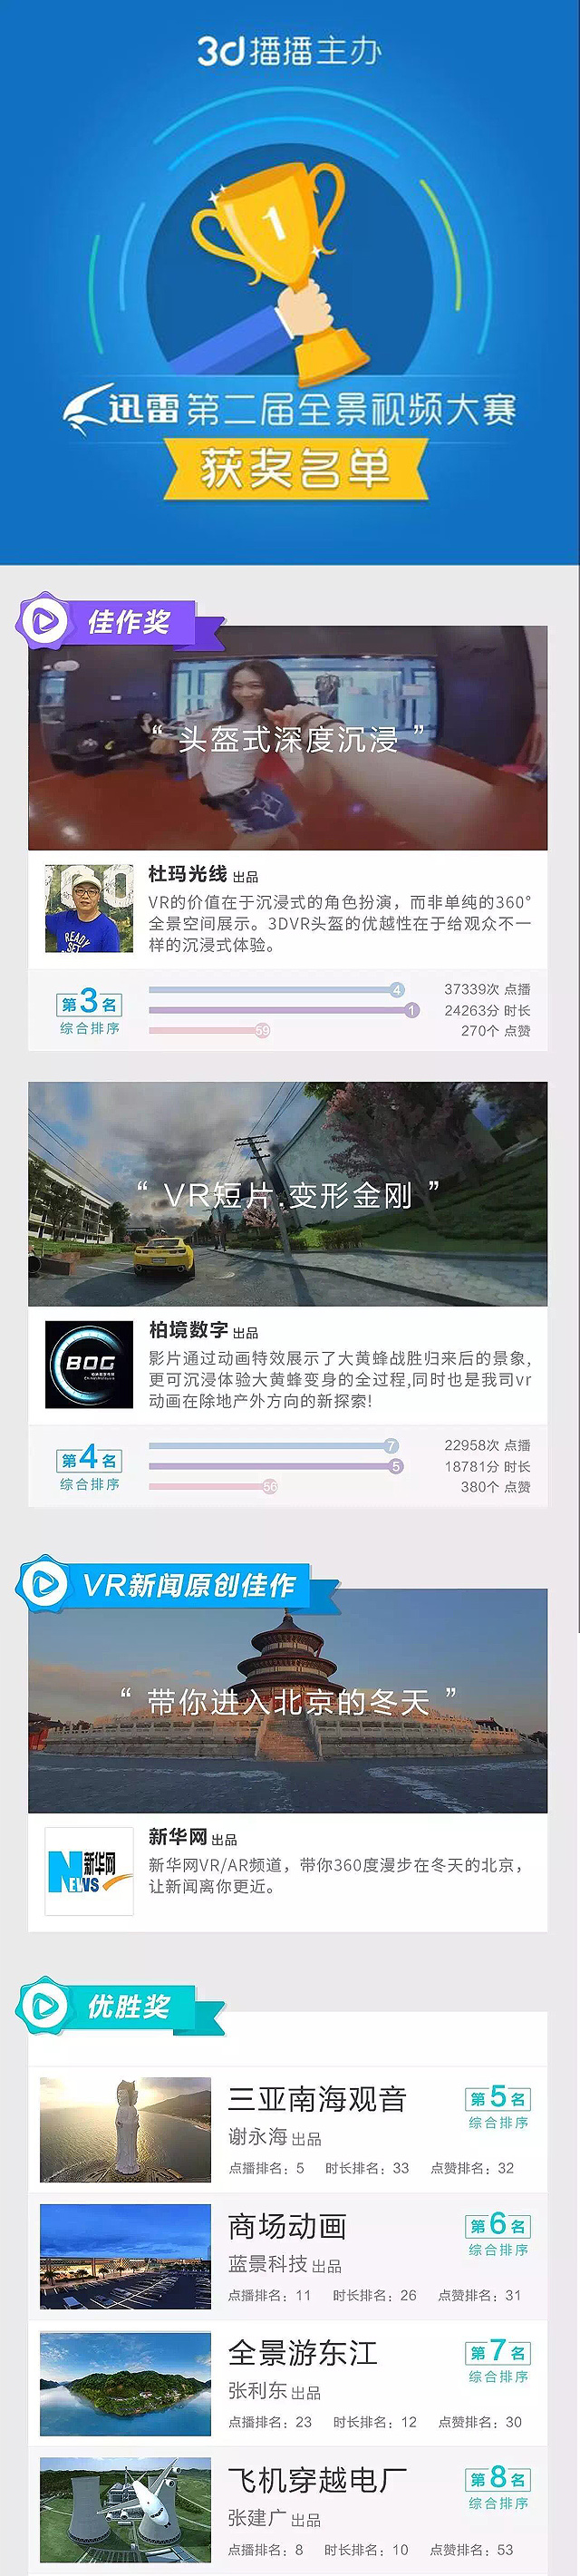 VR全景视频制作,VR动画片制作公司之柏境获奖作品